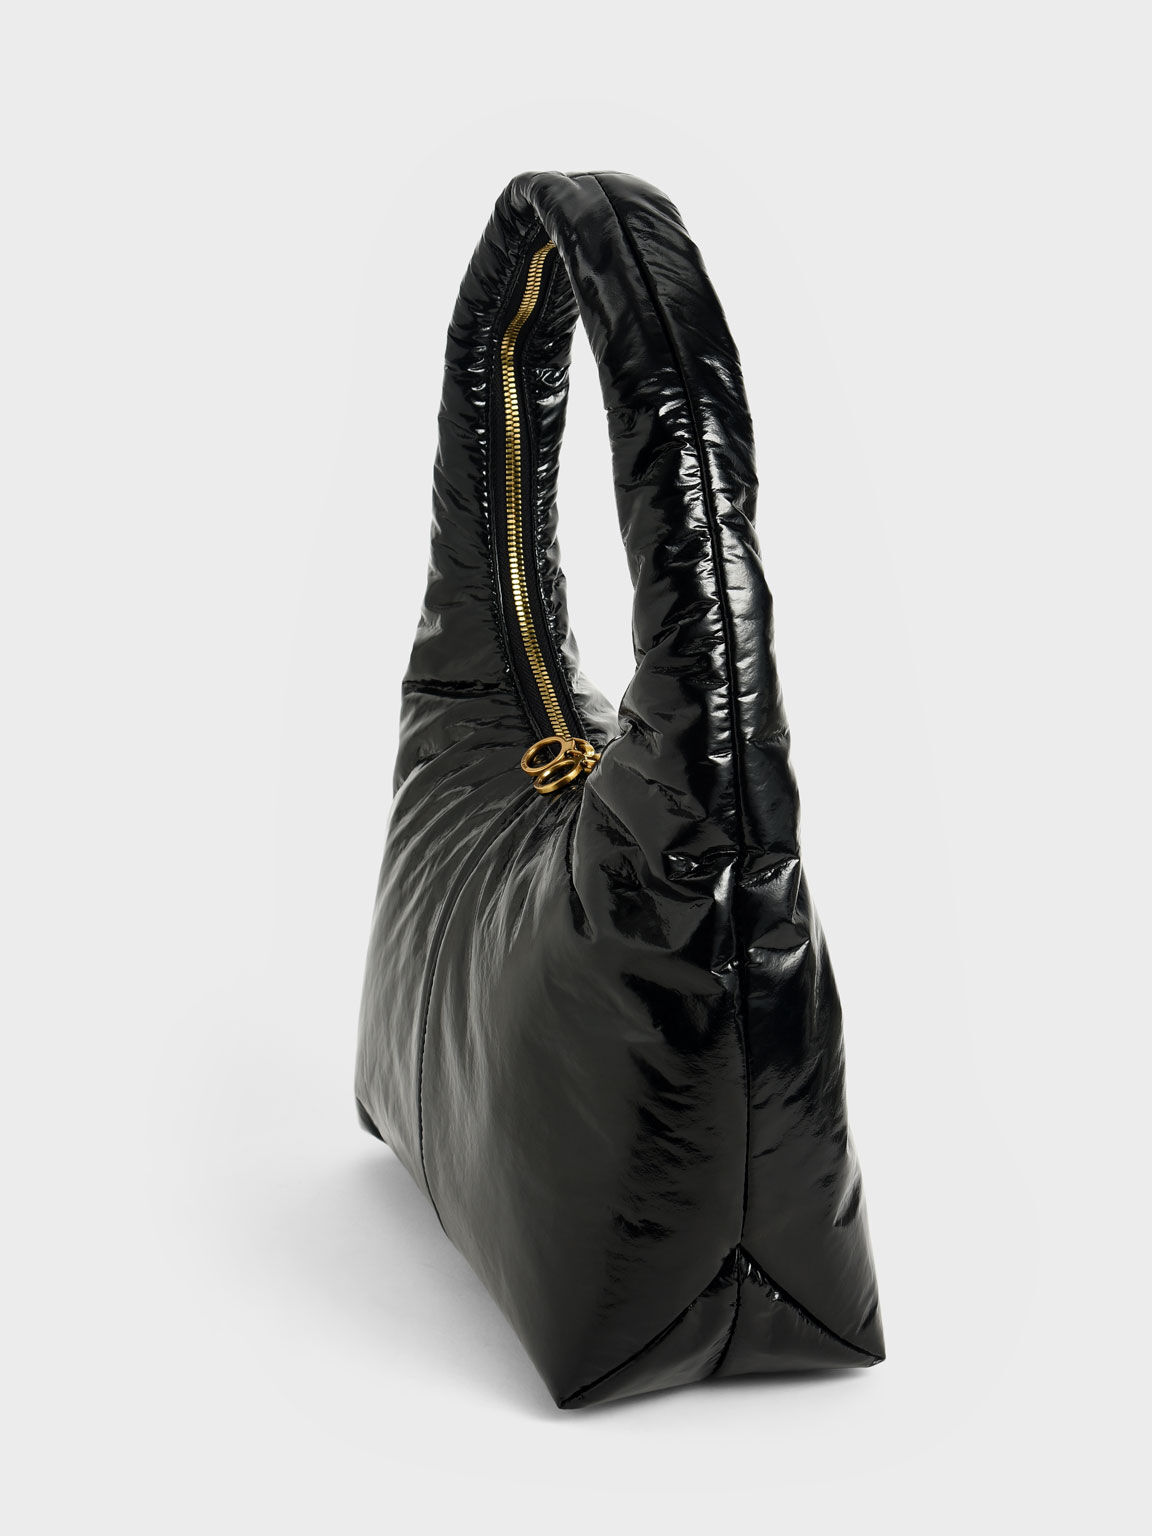 Arch Wrinkled-Effect Large Hobo Bag, Black, hi-res